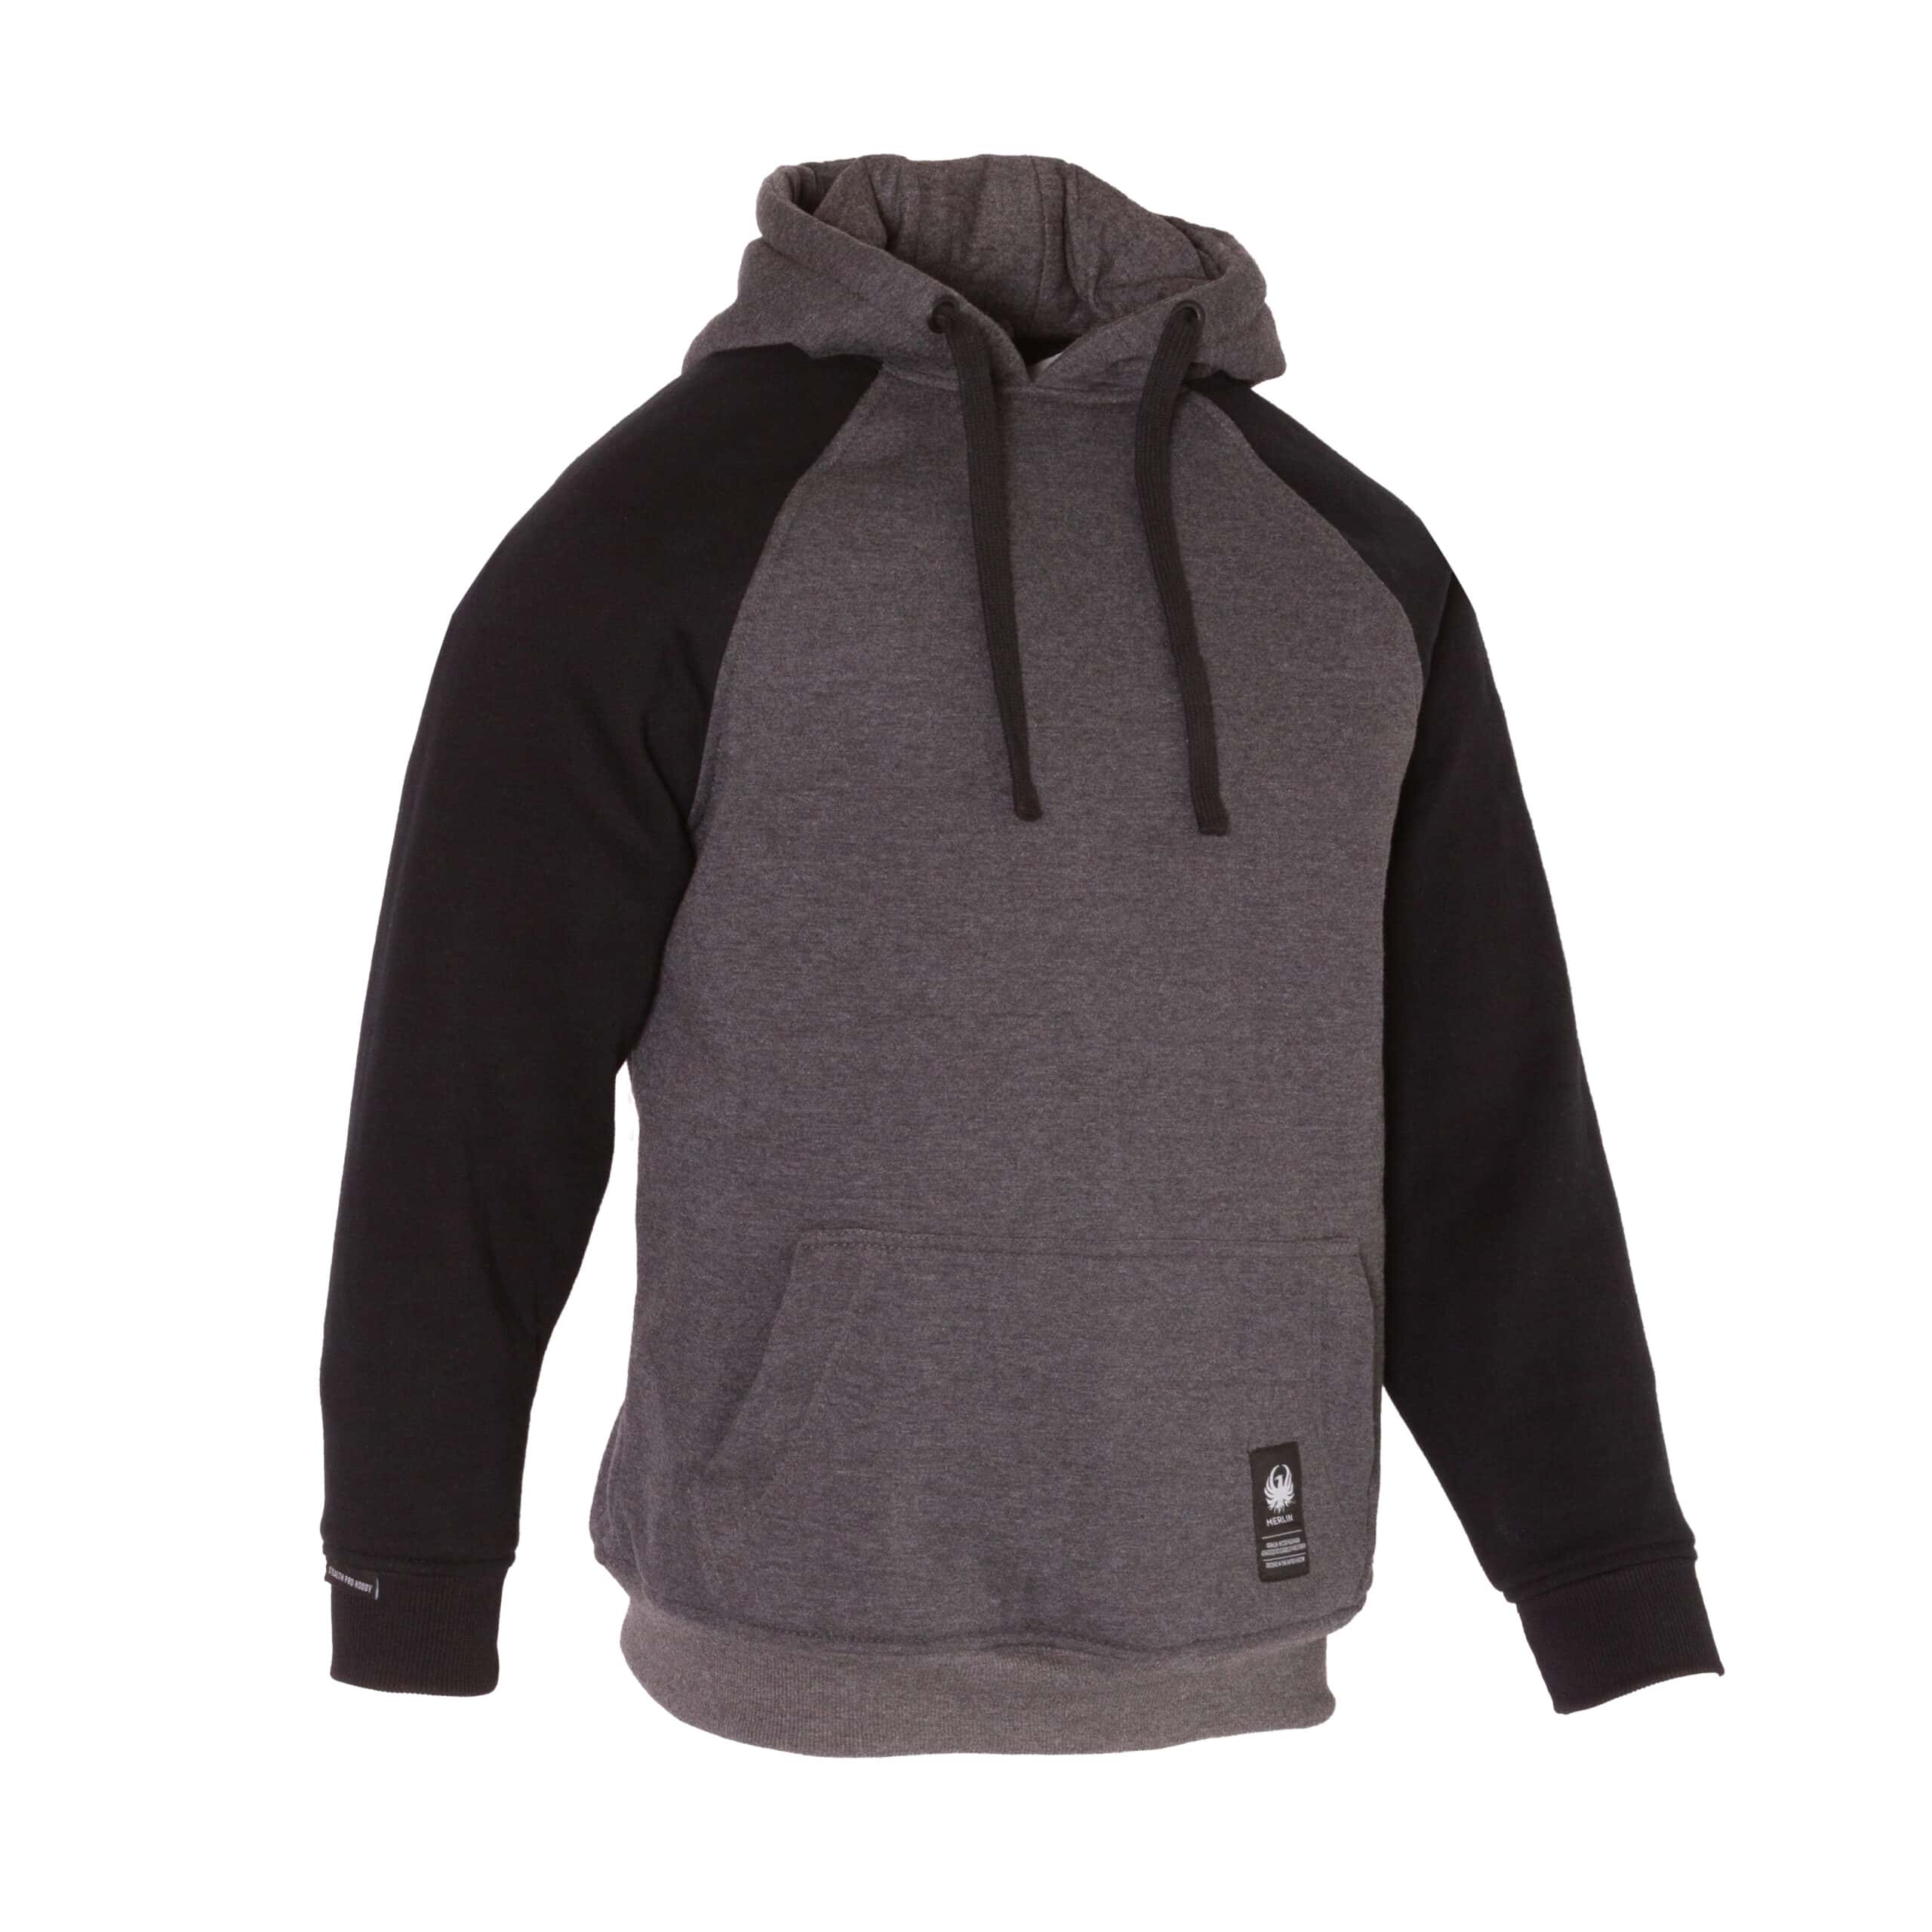 Merlin Stealth Pro hoodie in black/grey